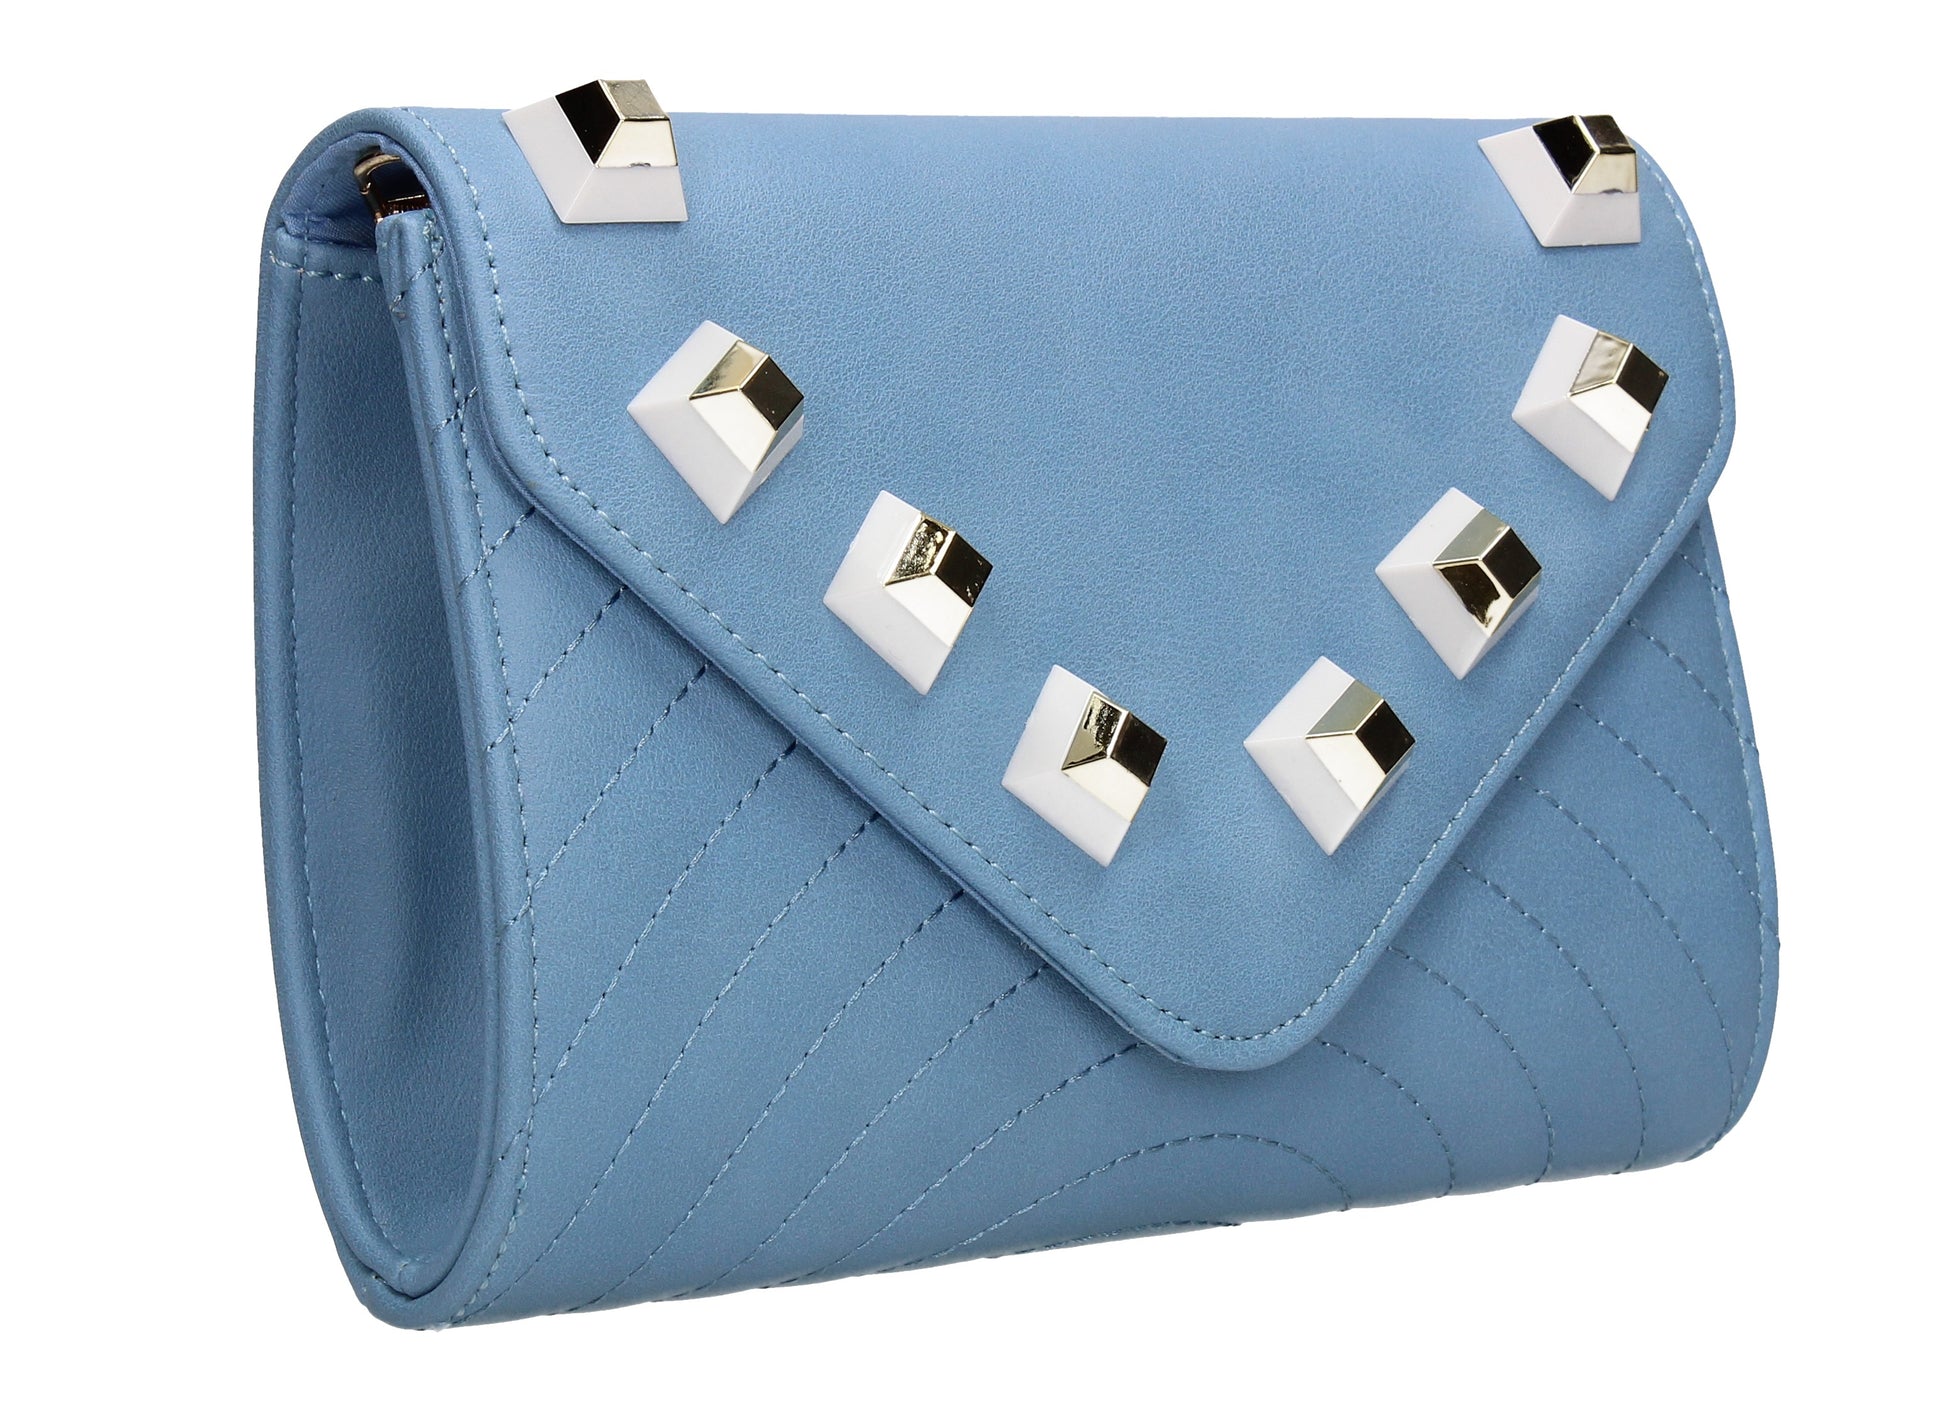 SWANKYSWANS Serafina Stud Clutch Bag Blue Cute Cheap Clutch Bag For Weddings School and Work